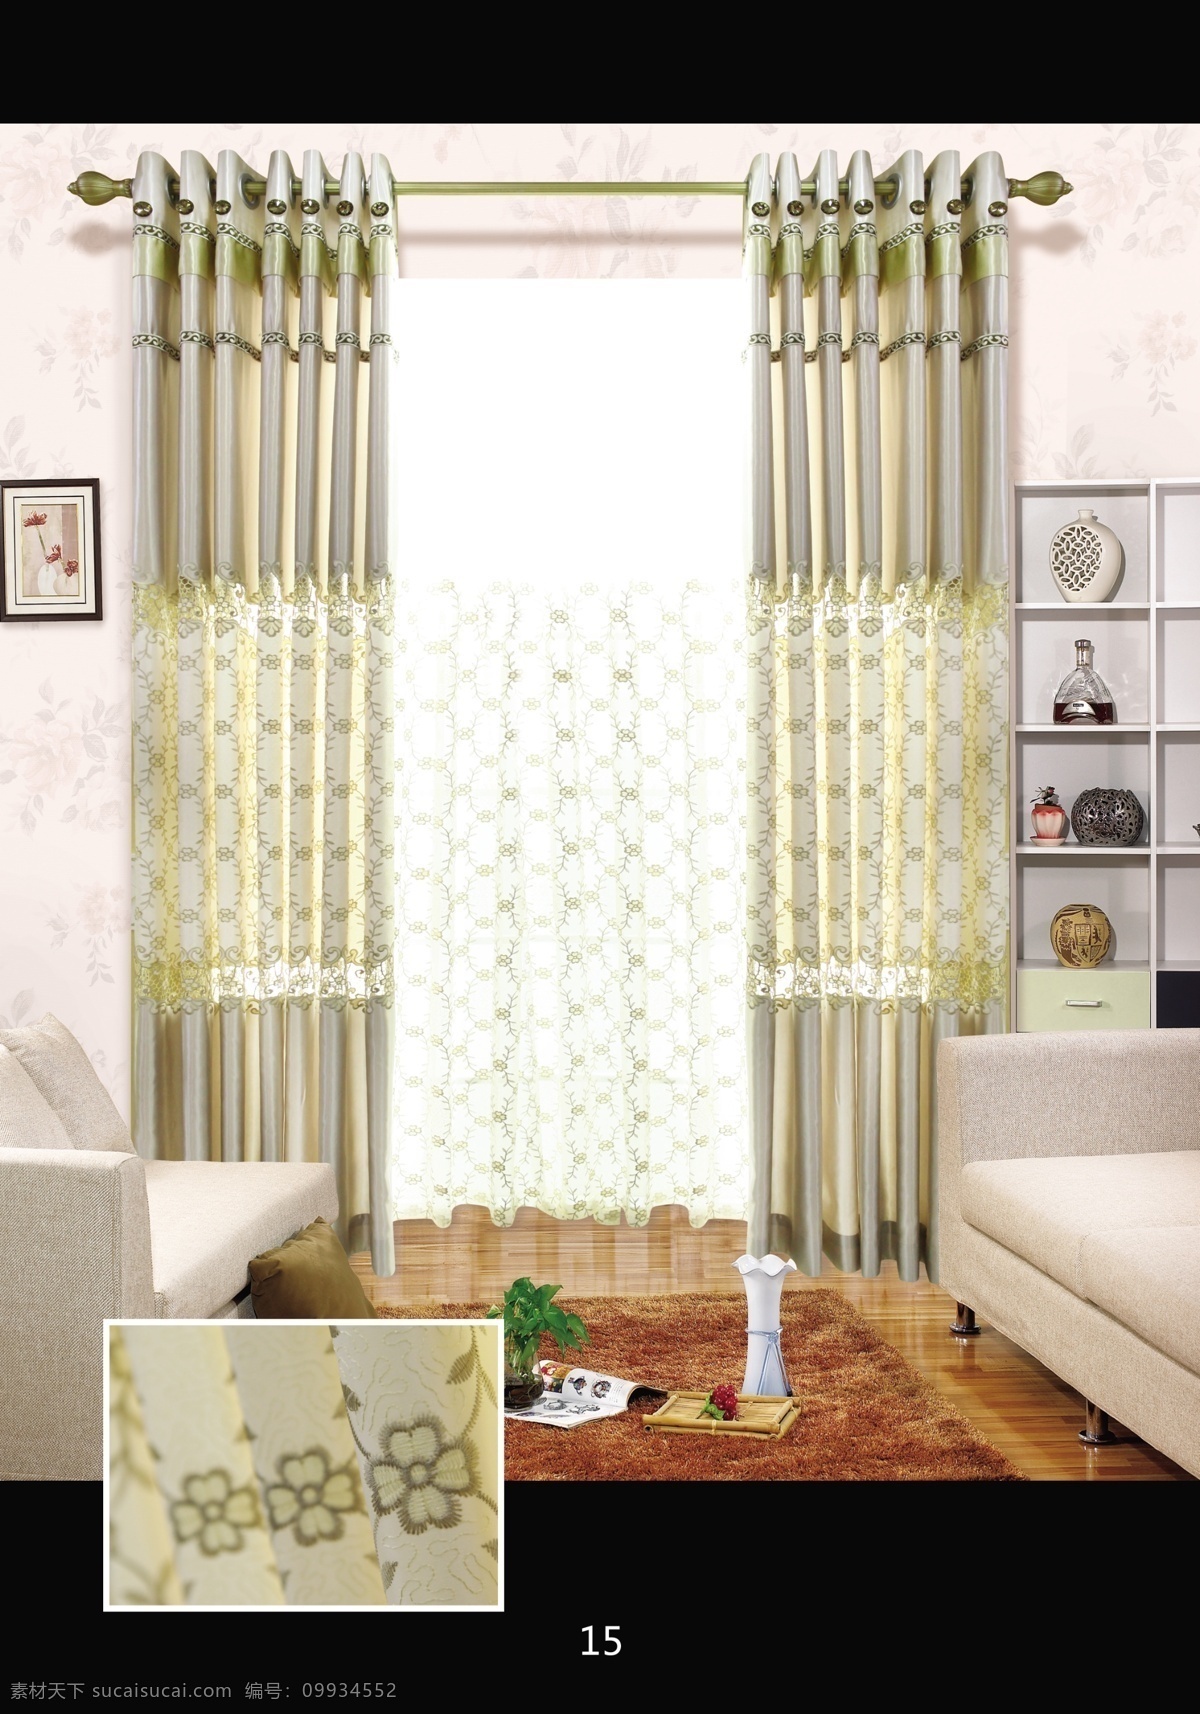 窗帘 窗帘效果图 窗帘布置 欧式窗帘 中式窗帘 画册设计